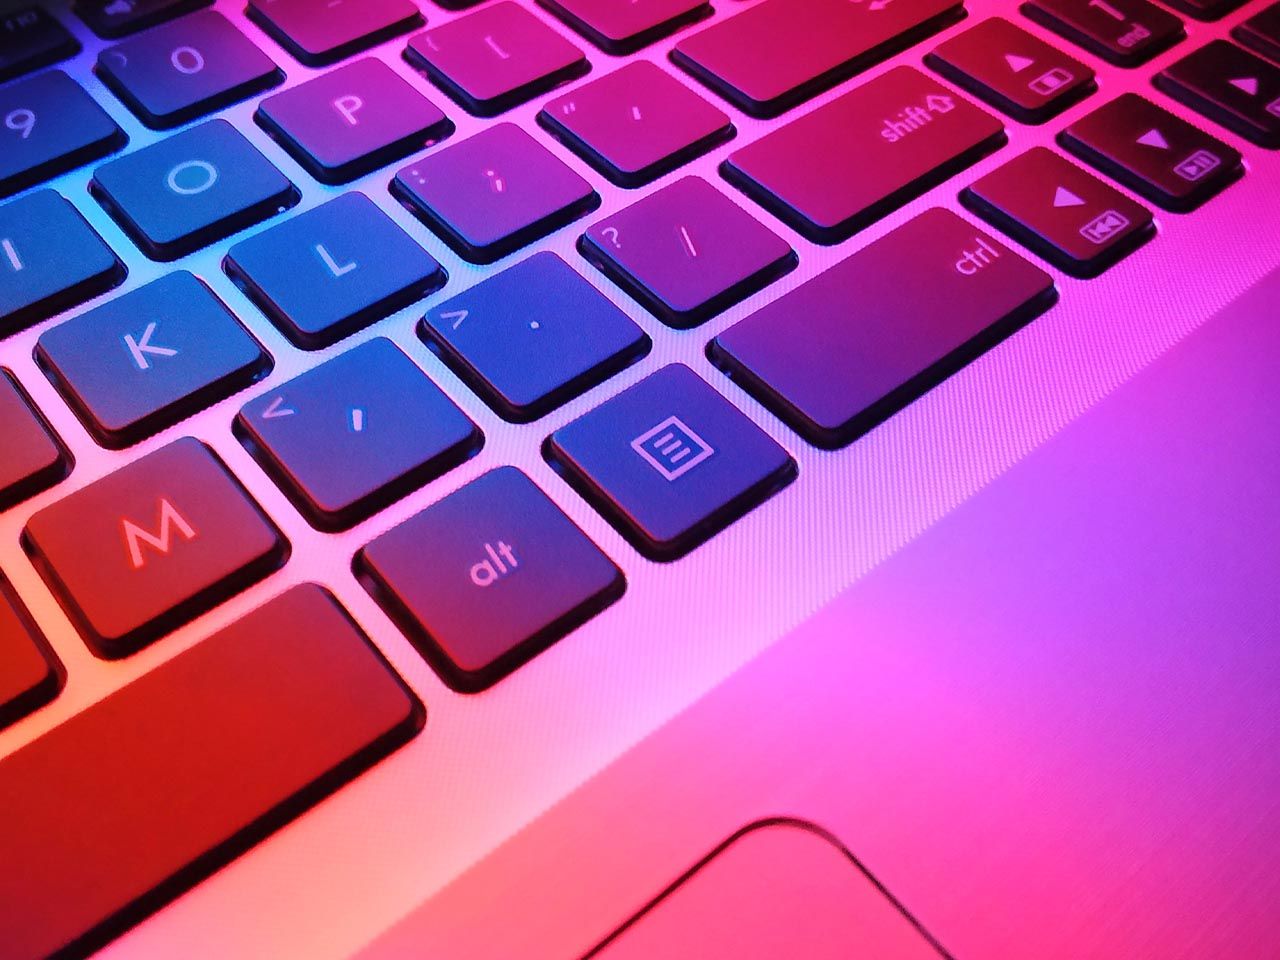 Jak wyczyścić klawiaturę w laptopie? Sposoby na wyczyszczenie klawiatury - Ekspert Ceneo